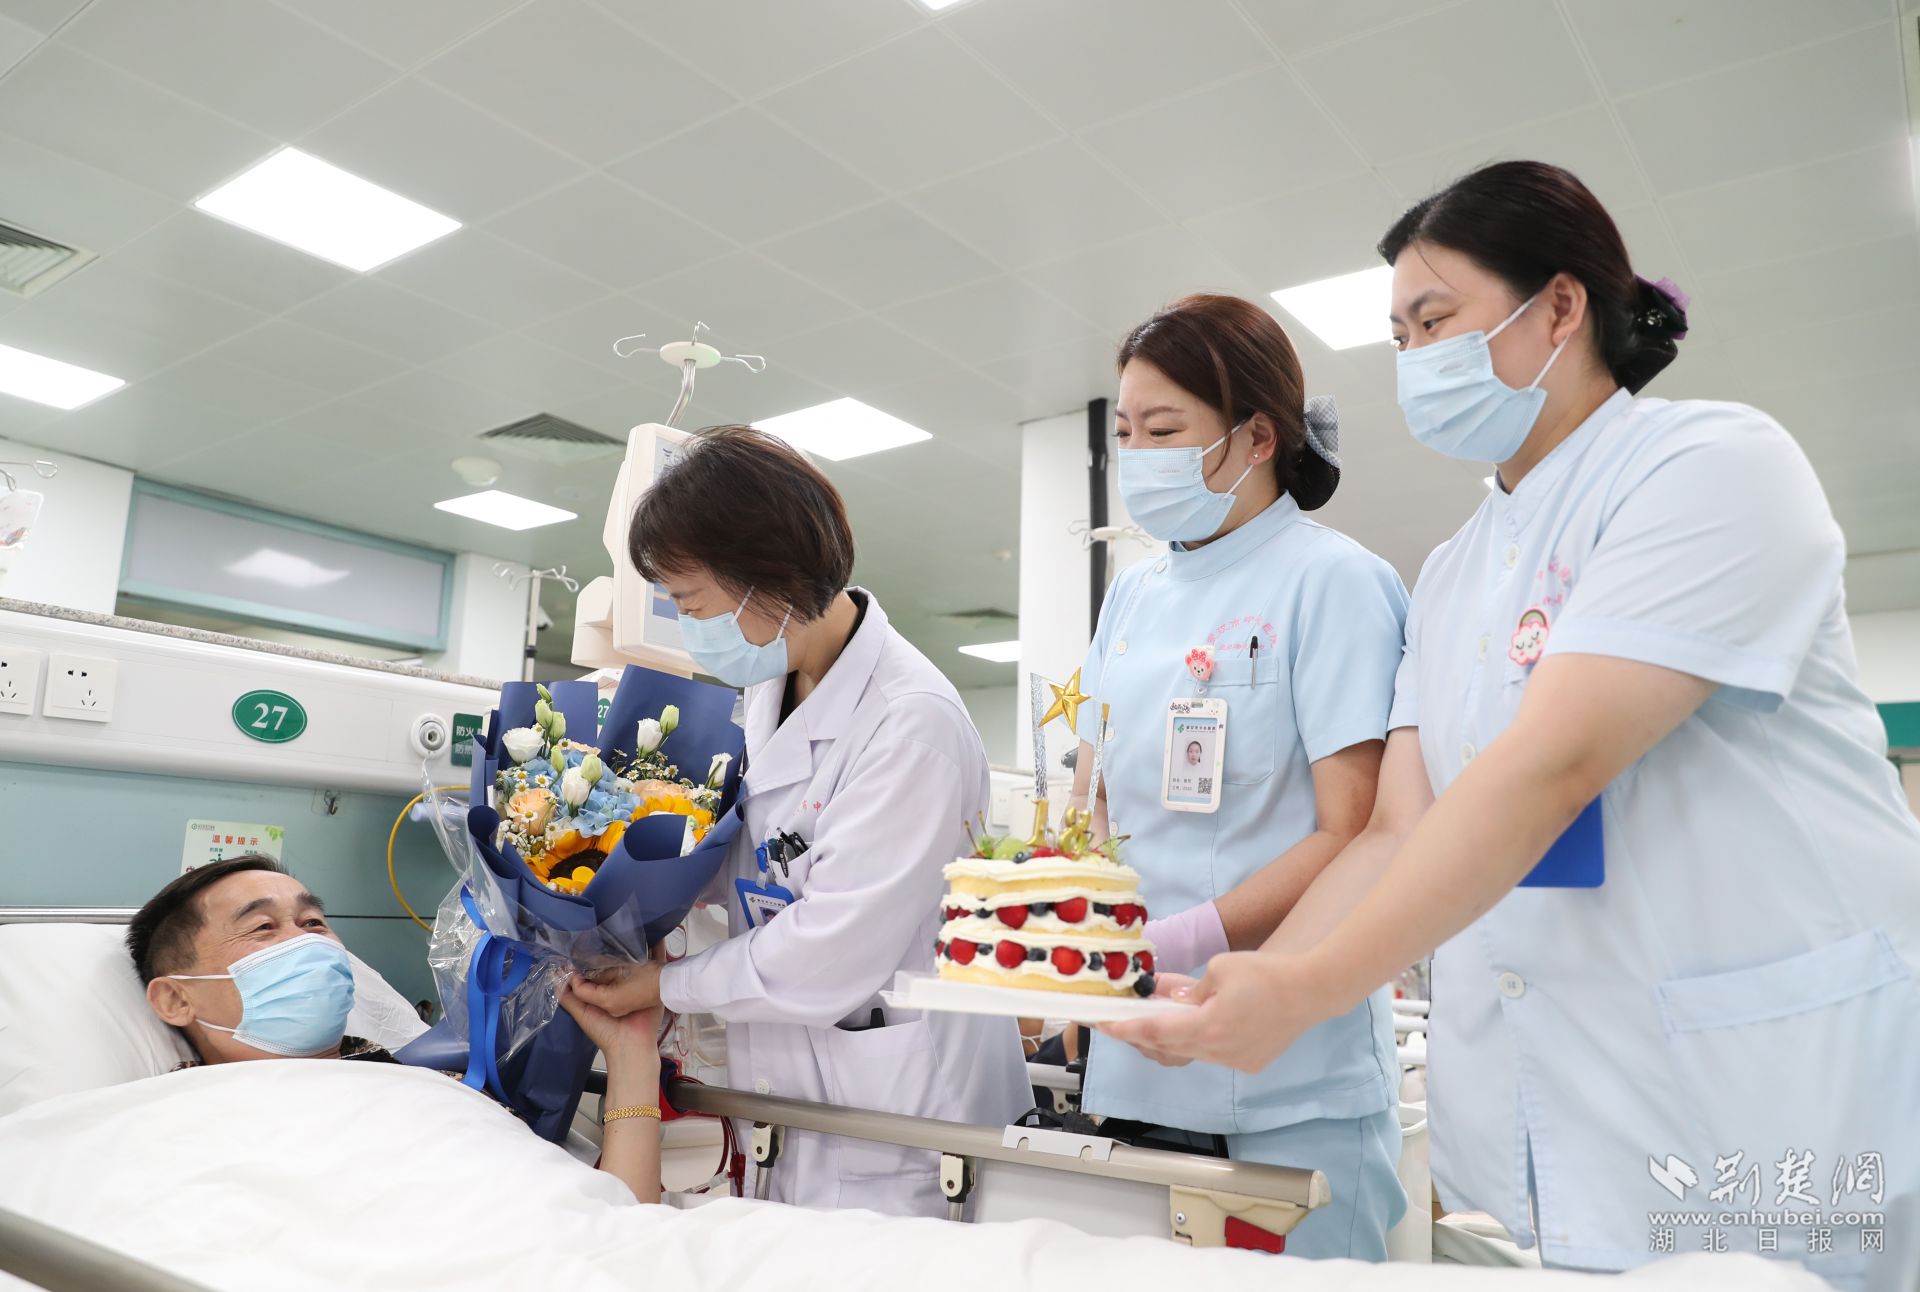 暖心!武汉市中心医院医护为尿毒症患者举办别样的18岁生日